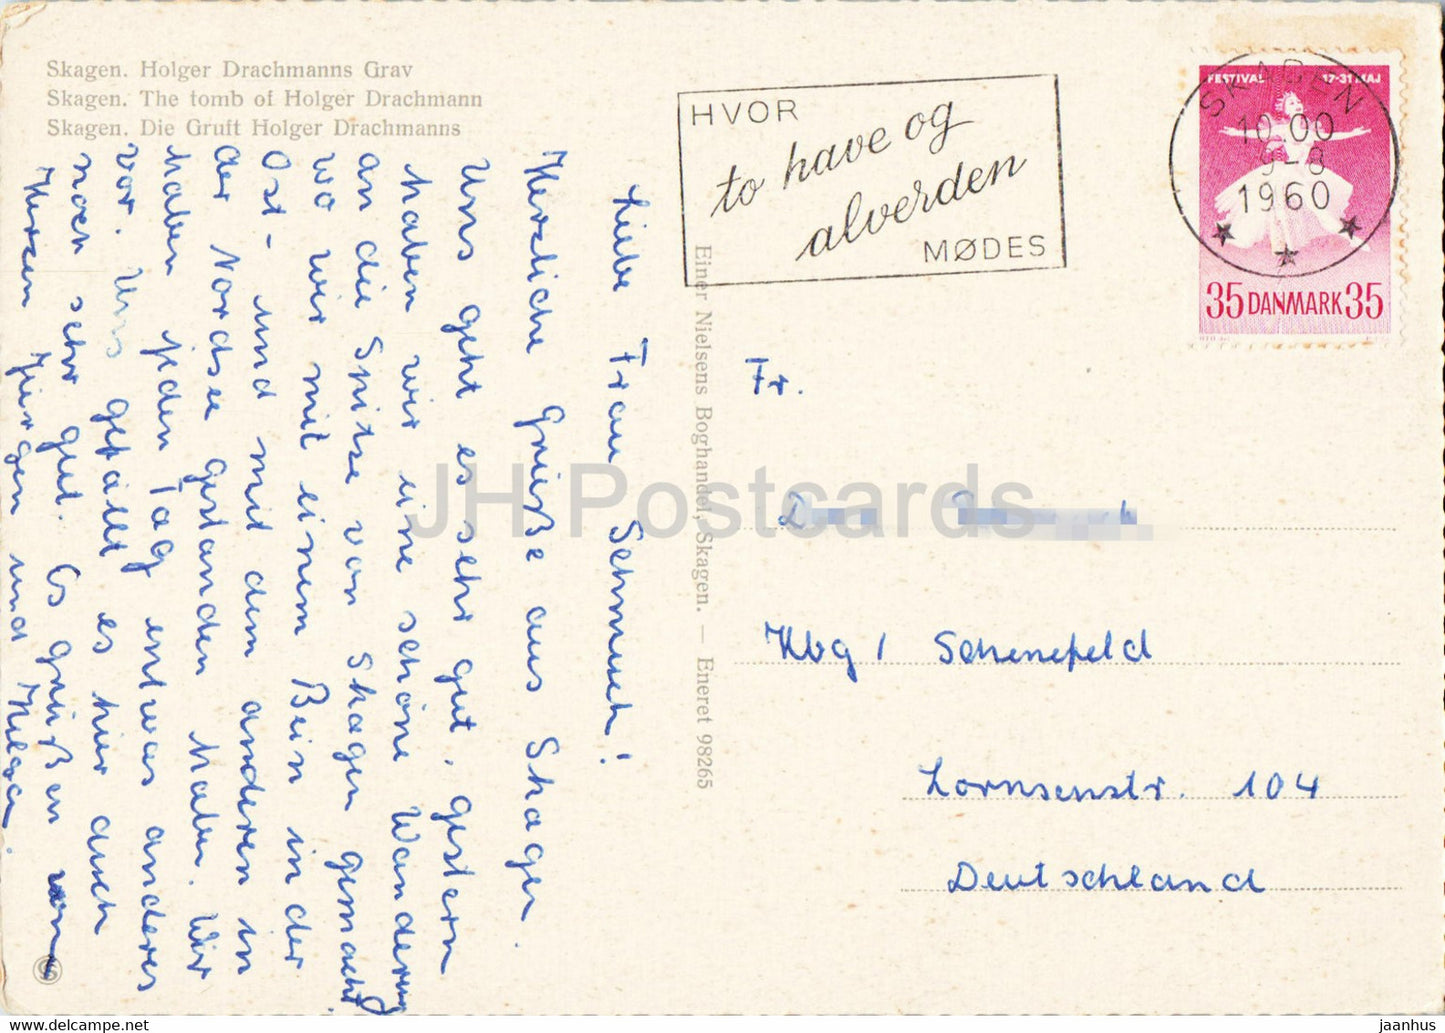 Skagen – Das Grab von Holger Drachmann – alte Postkarte – 1960 – Dänemark – gebraucht